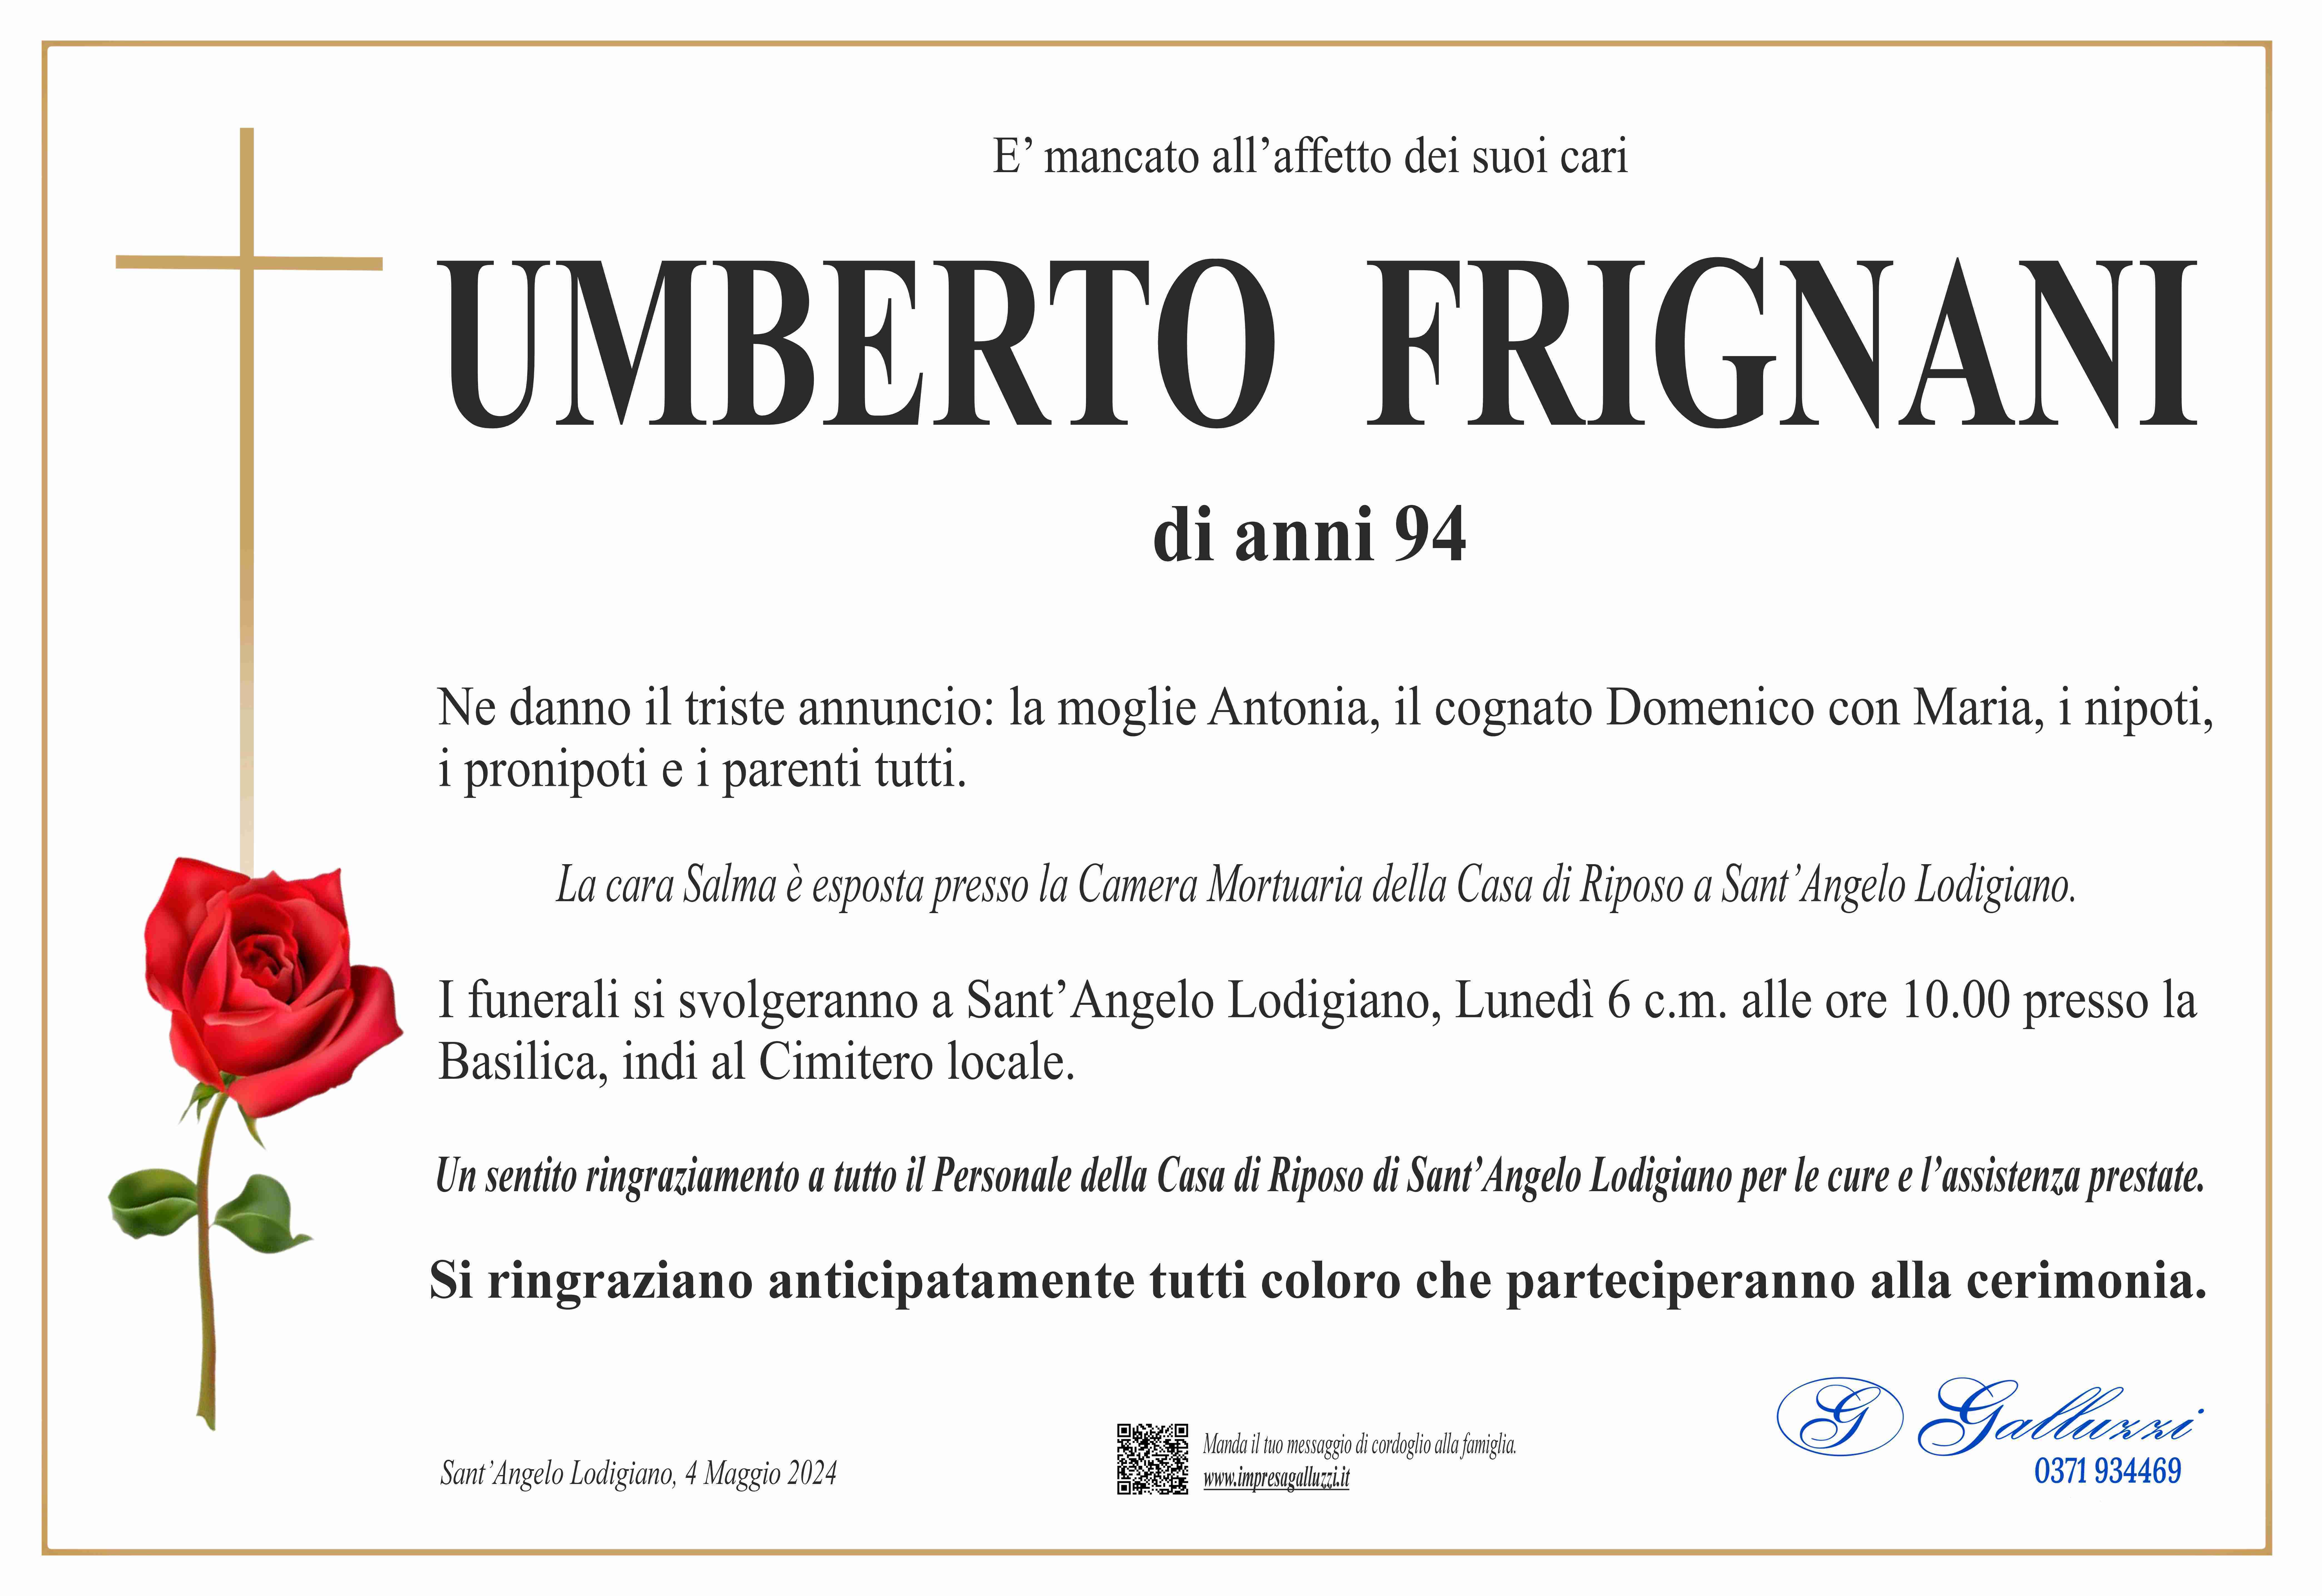 Umberto Frignani